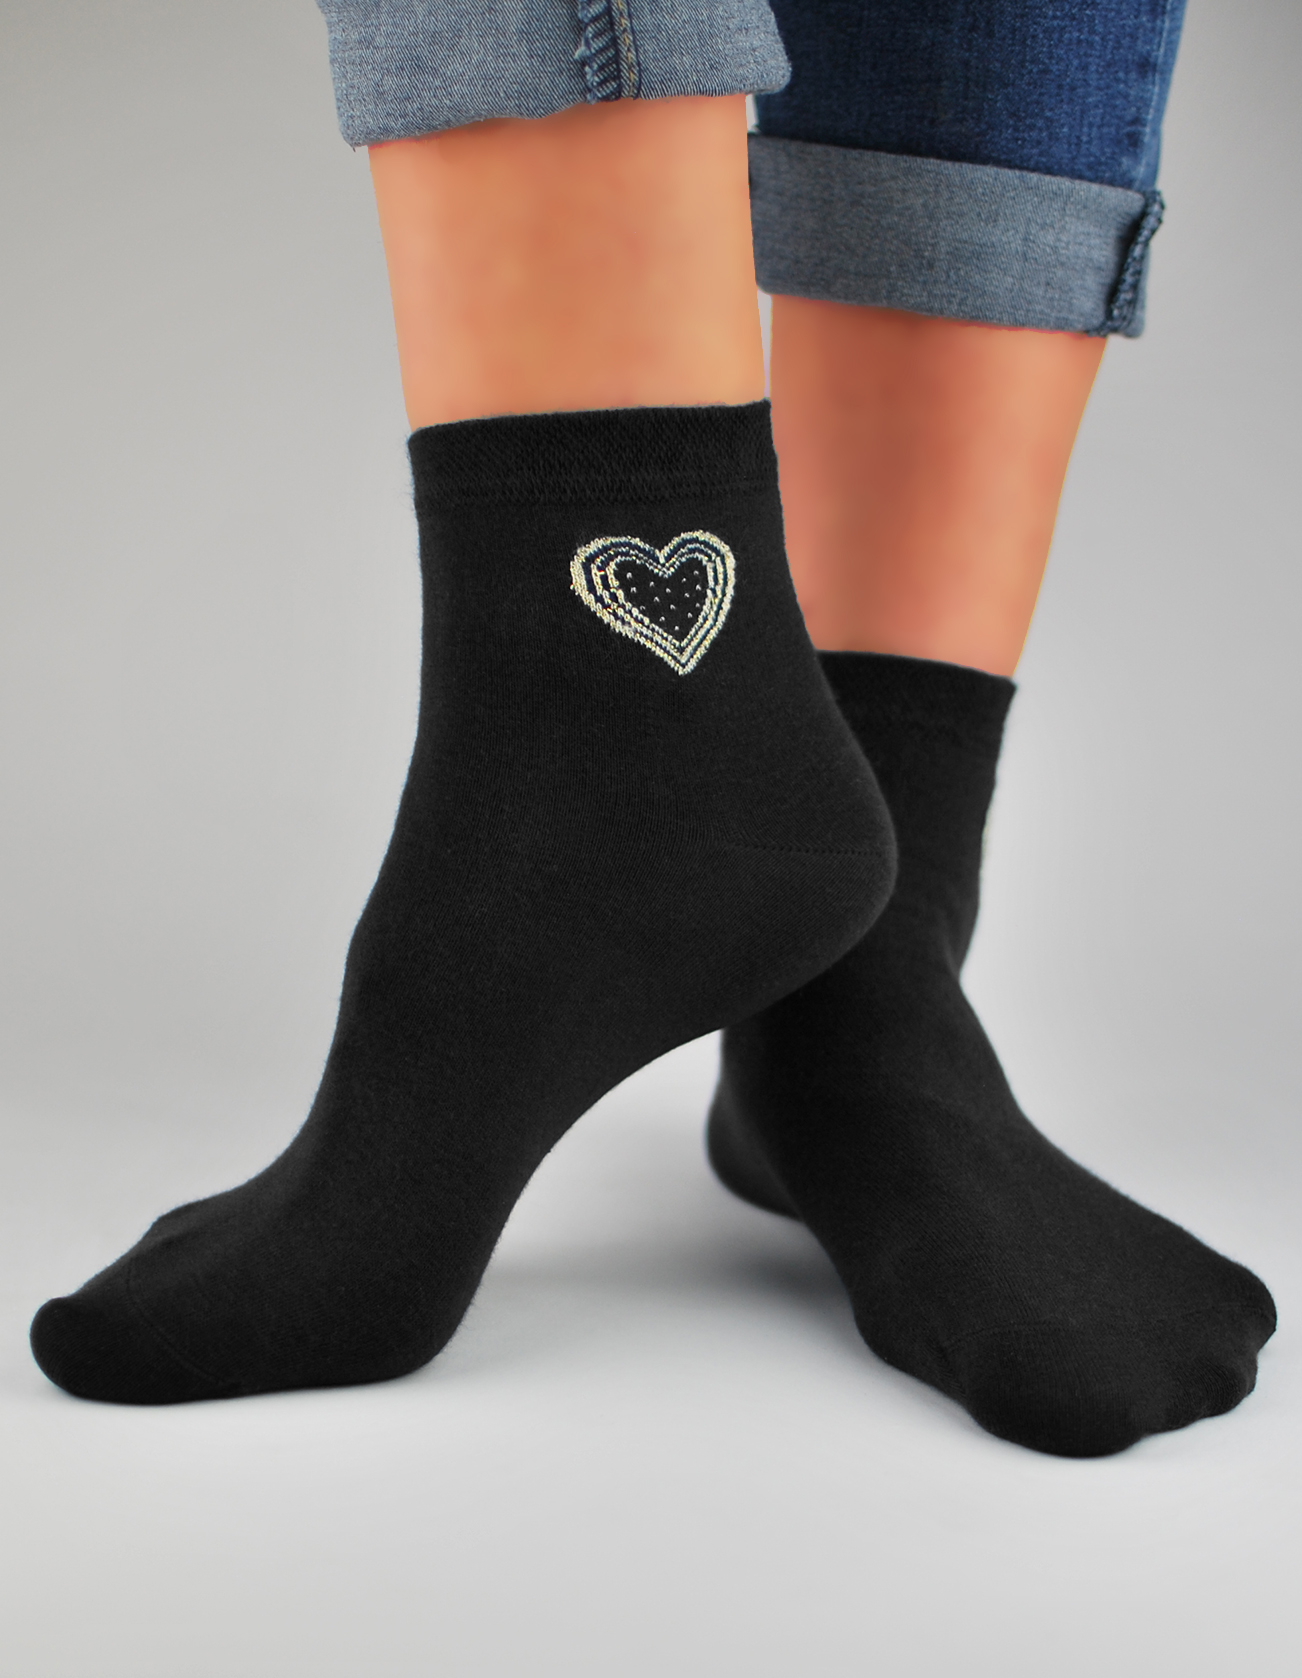 NOVITI Woman's Socks SB027-W-02